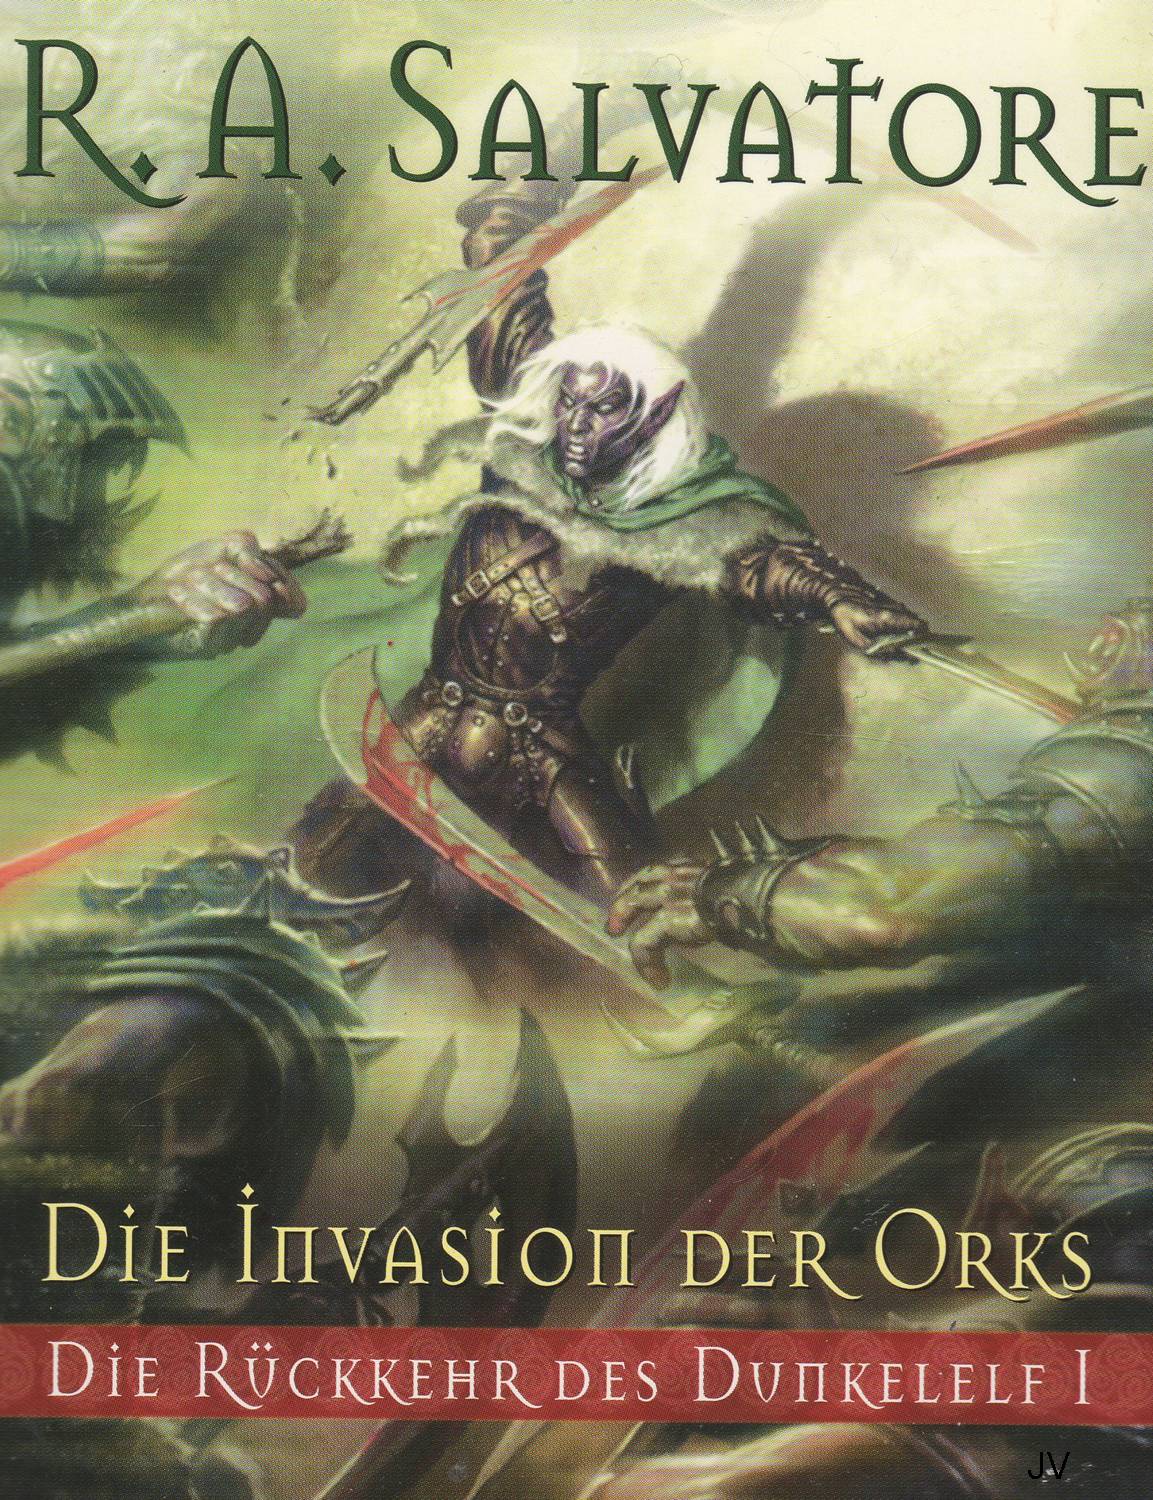 Cover zum Buch Die Invasion der Orks von R.A.Salvatore, erster Teil der Rckkehr des Dunkelelf Saga